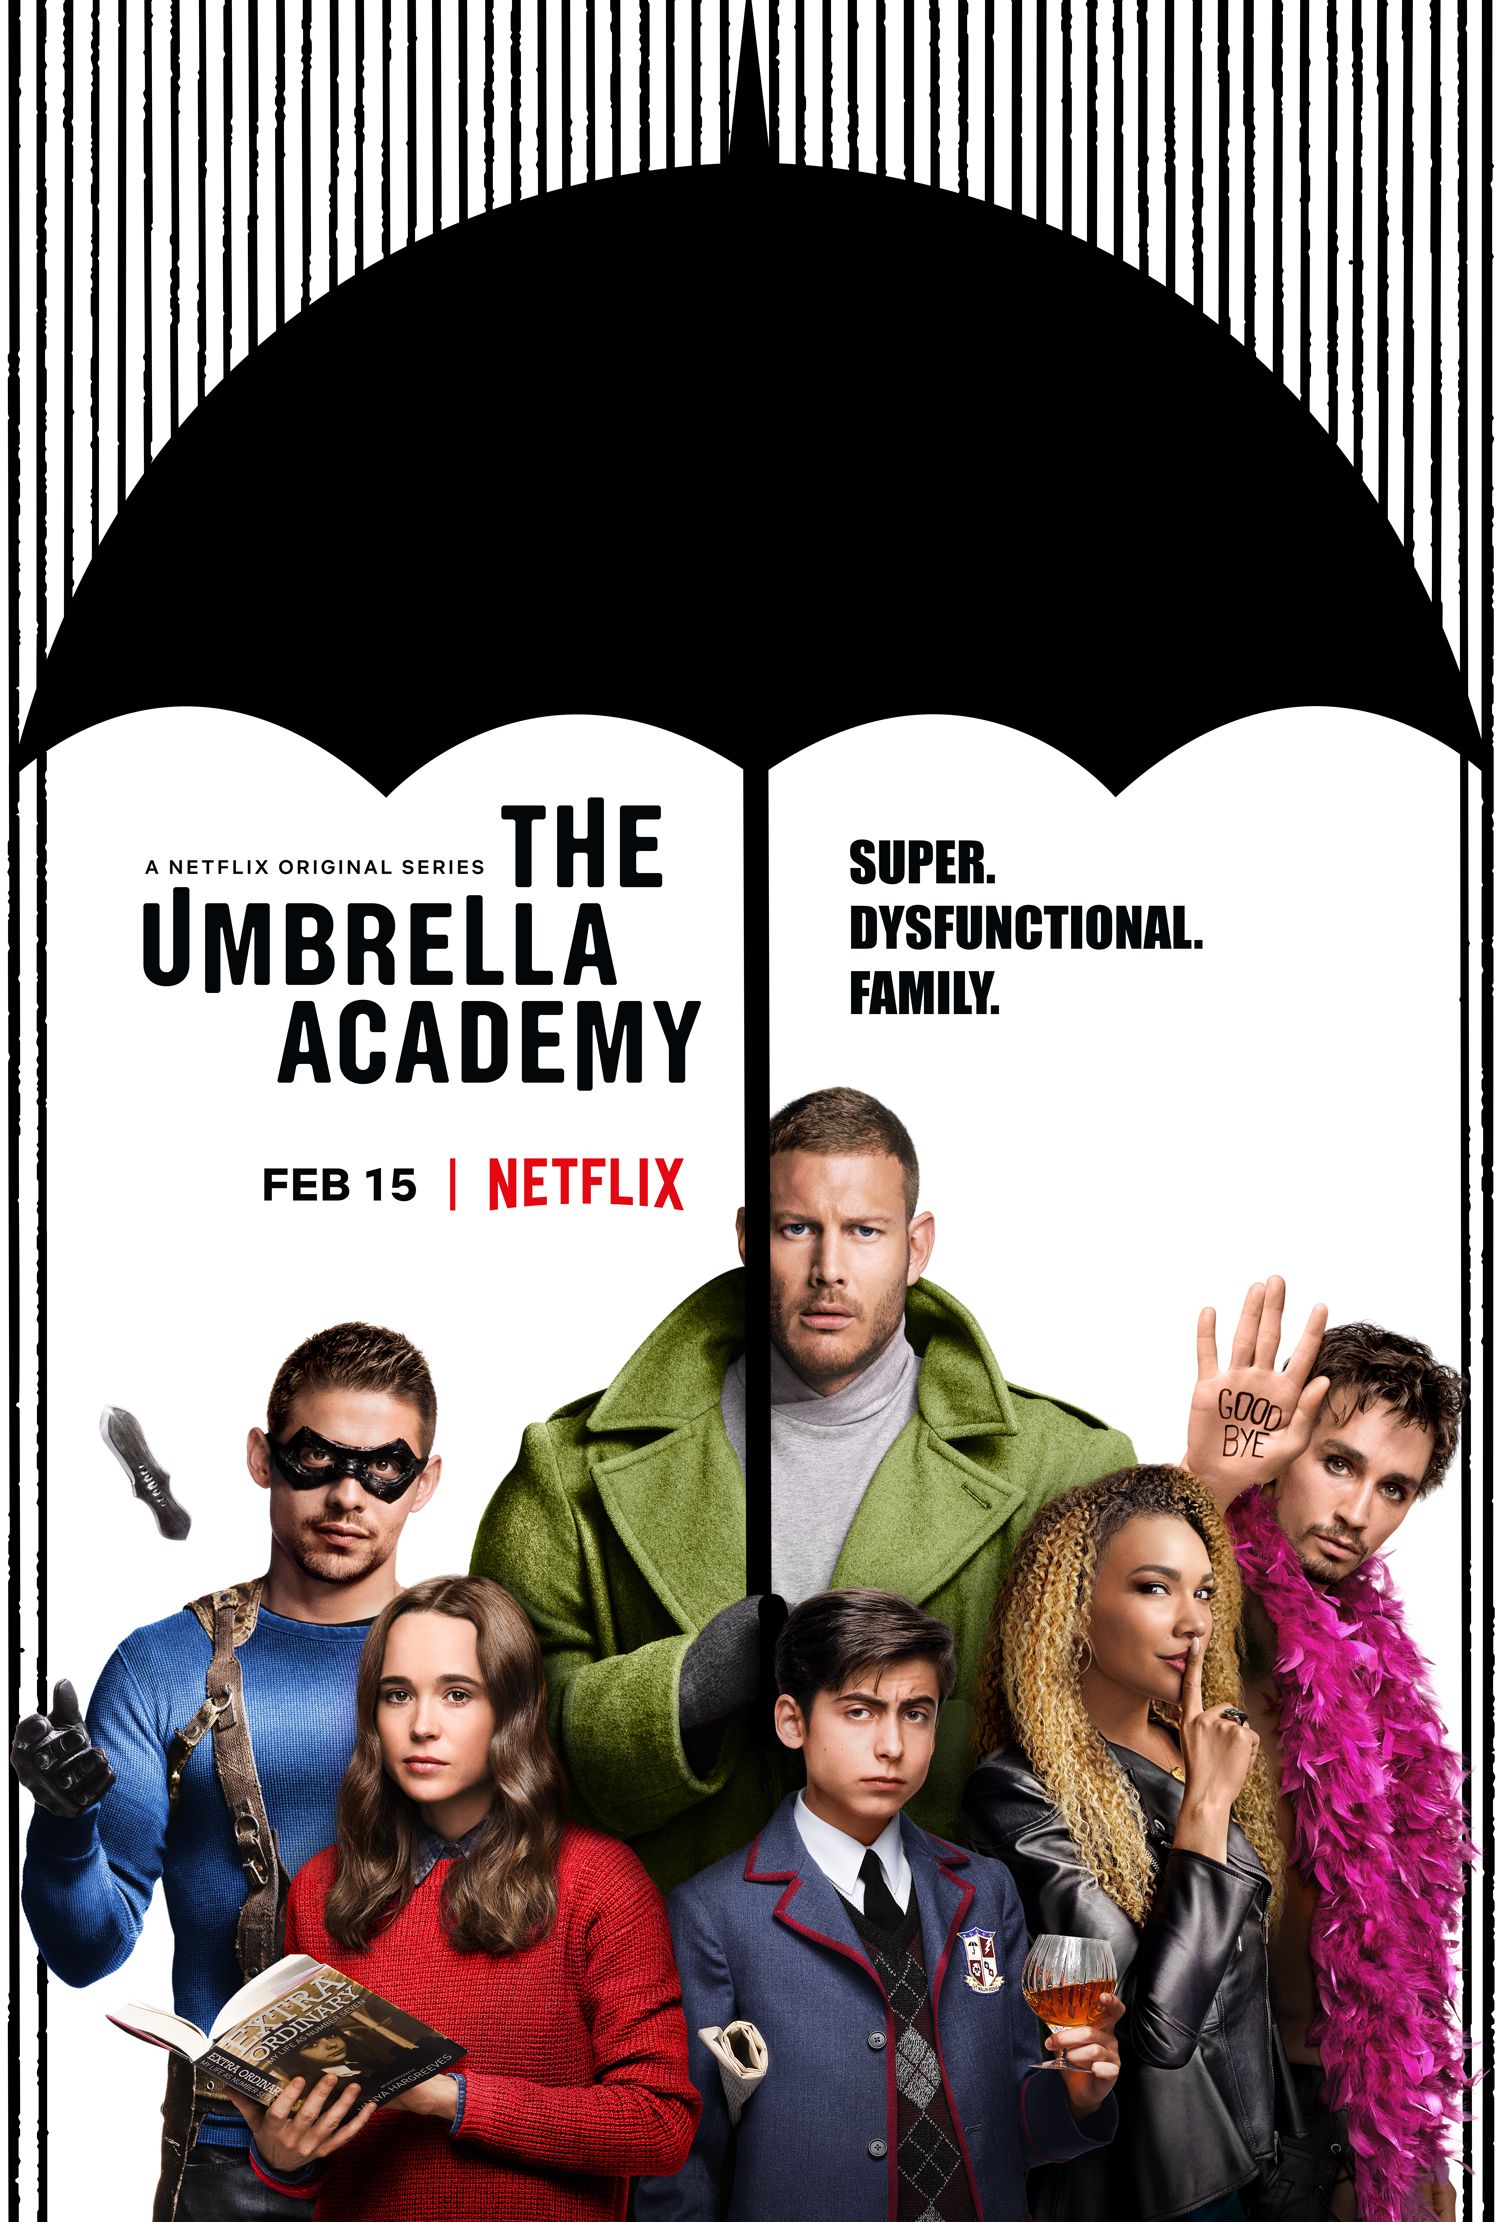 http://cdn.collider.com/wp-content/uploads/2018/12/umbrella-academy-poster.jpg